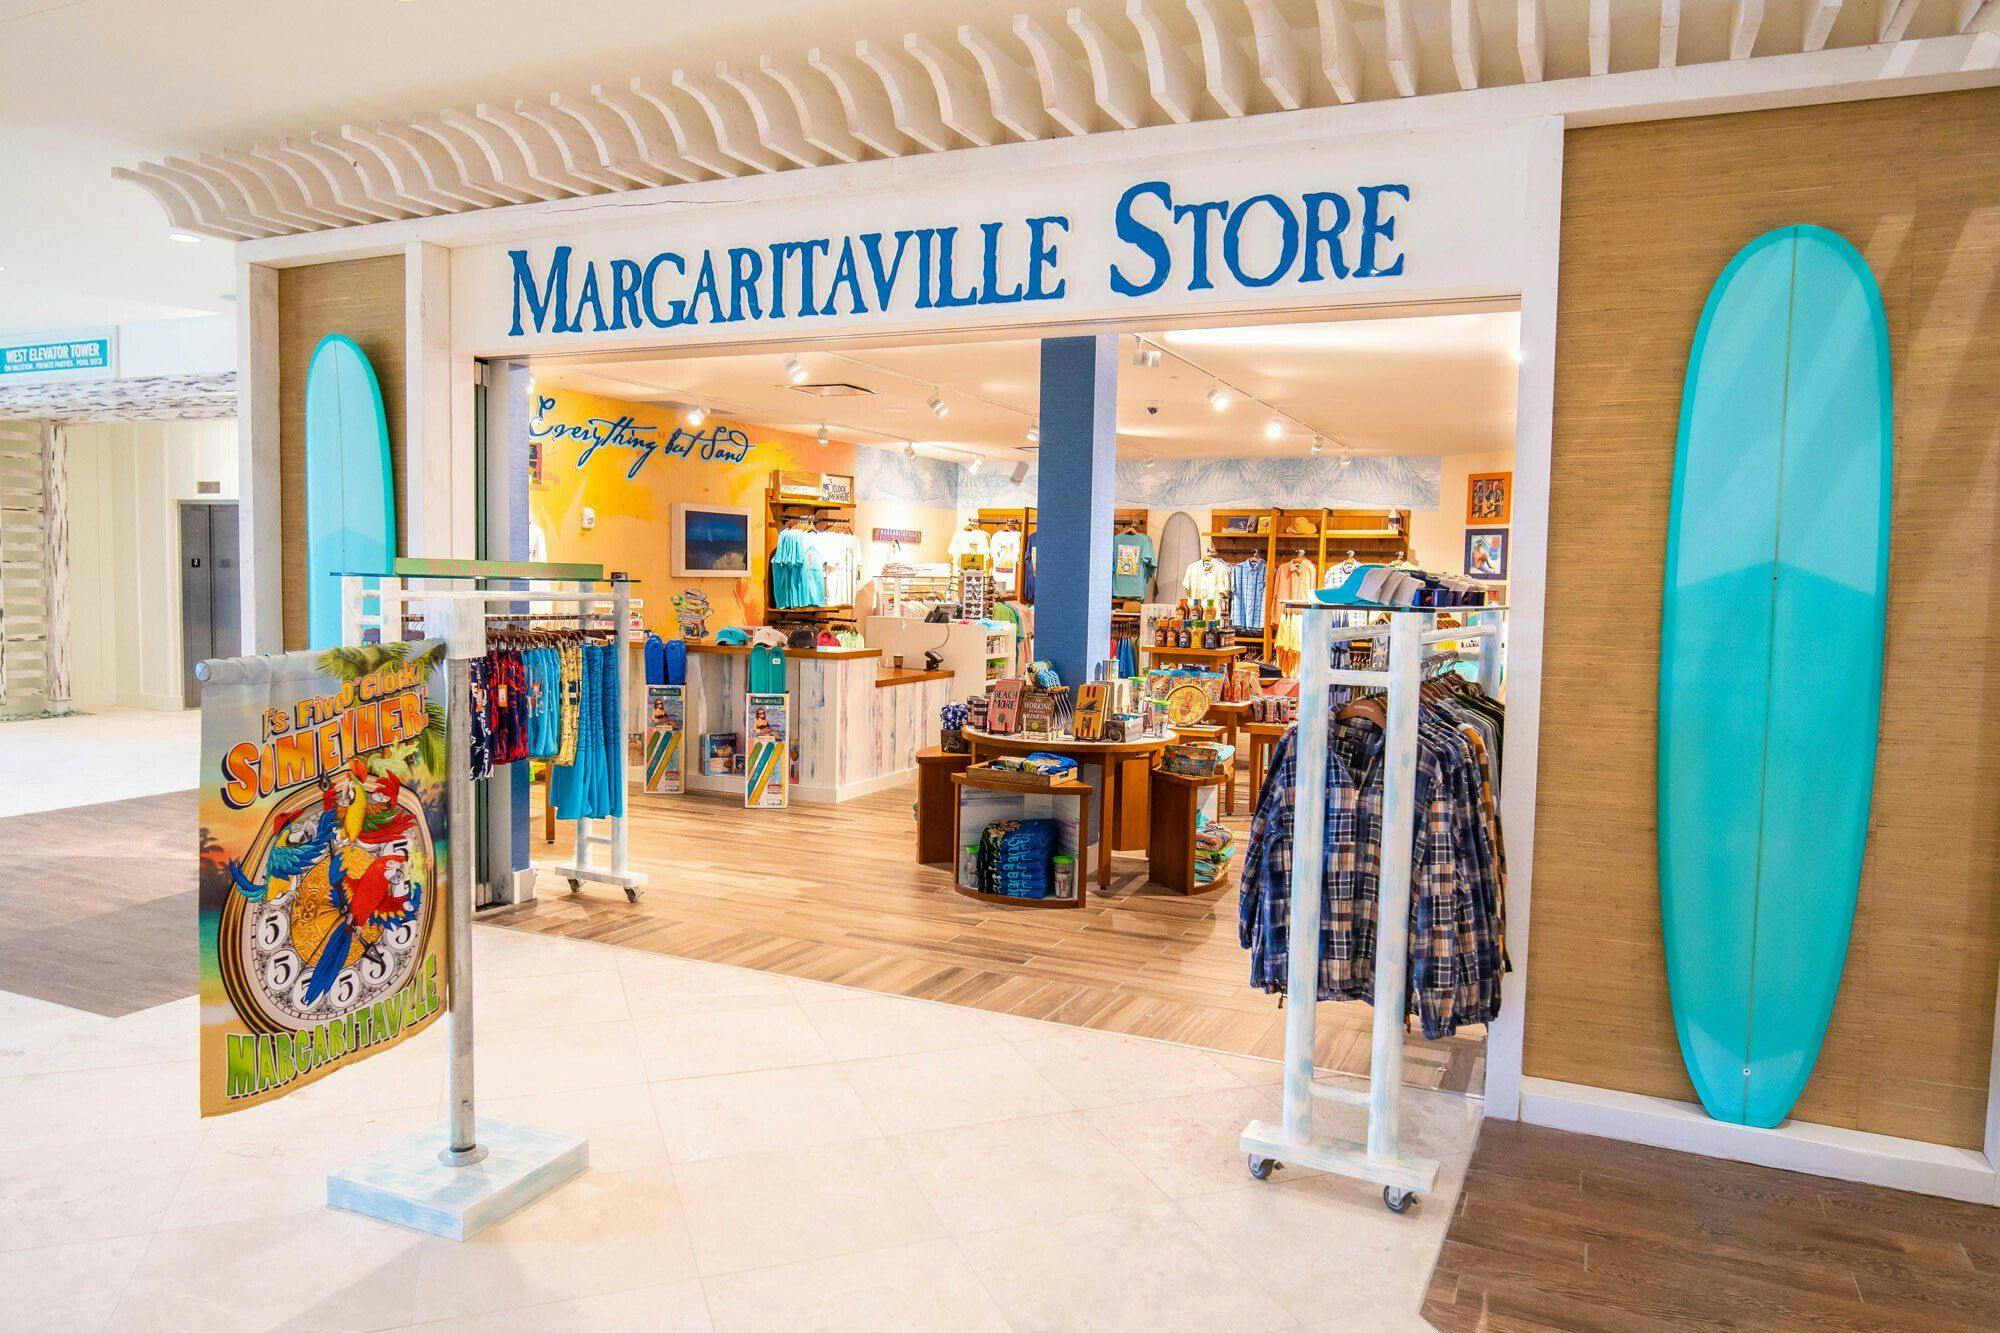 Margaritaville store